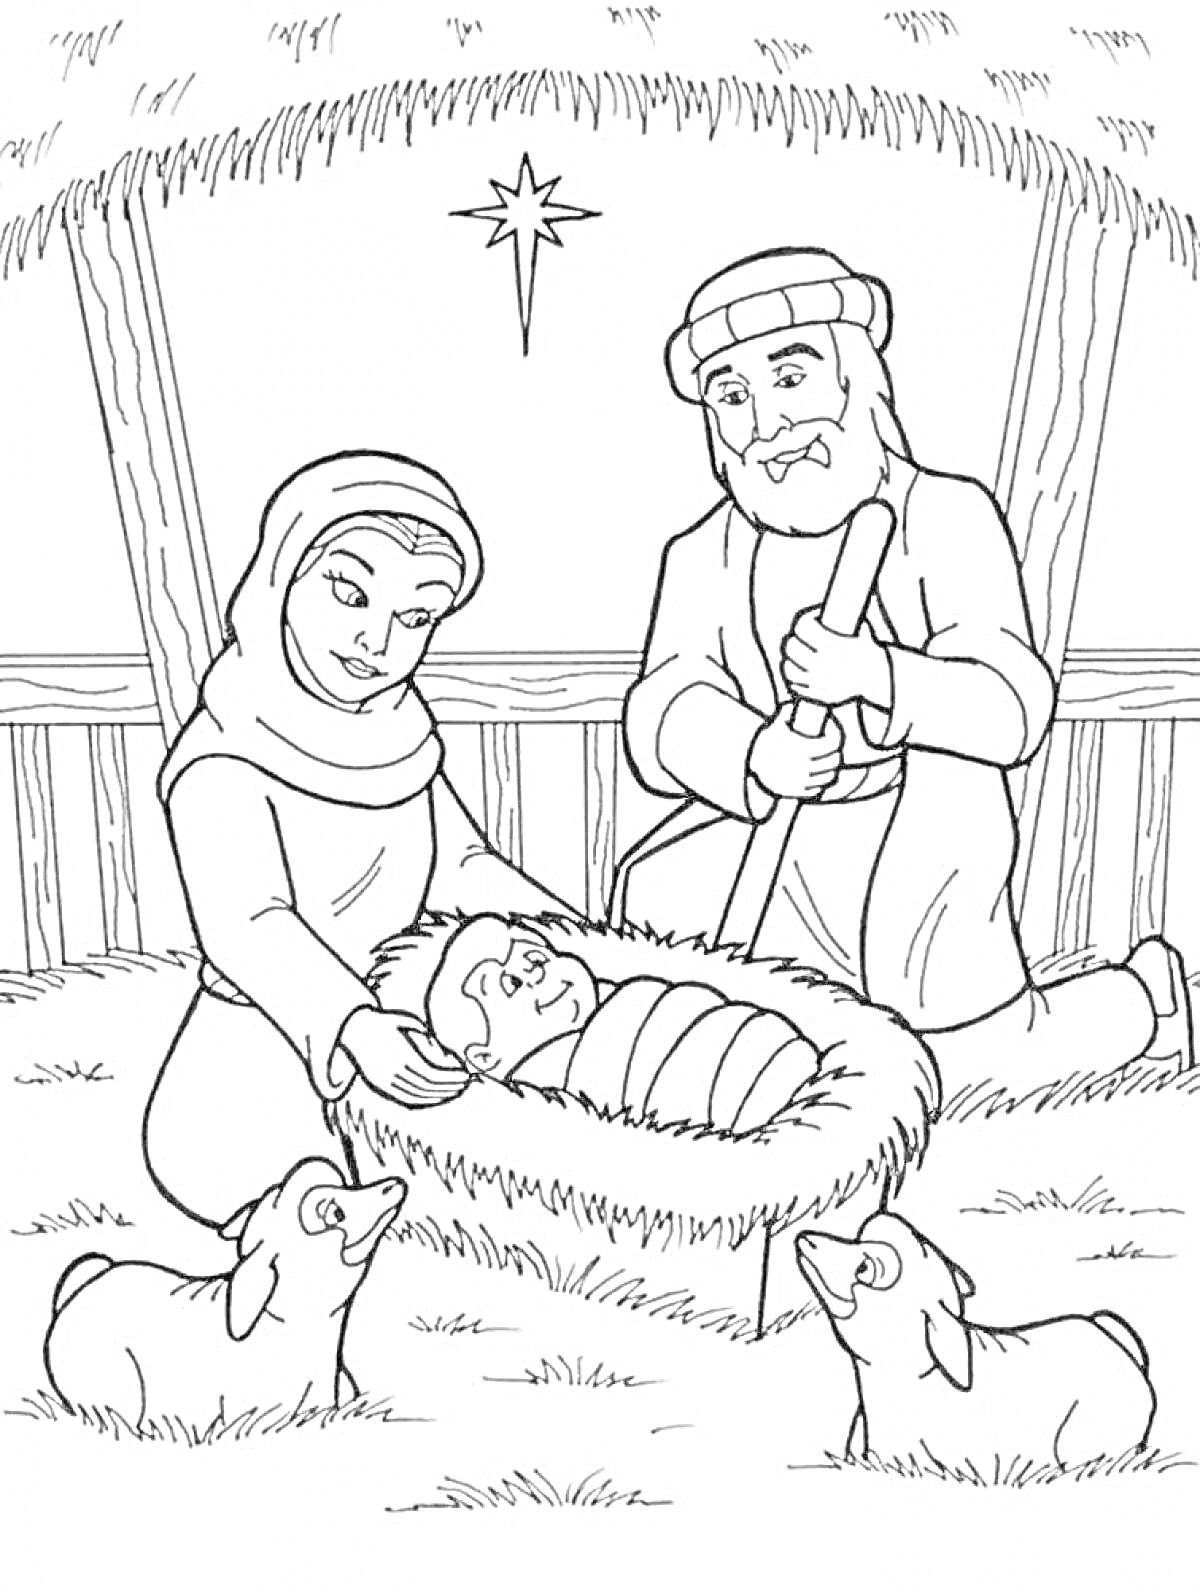 Рождественская сцена с младенцем Иисусом, Марией, Иосифом и овечками